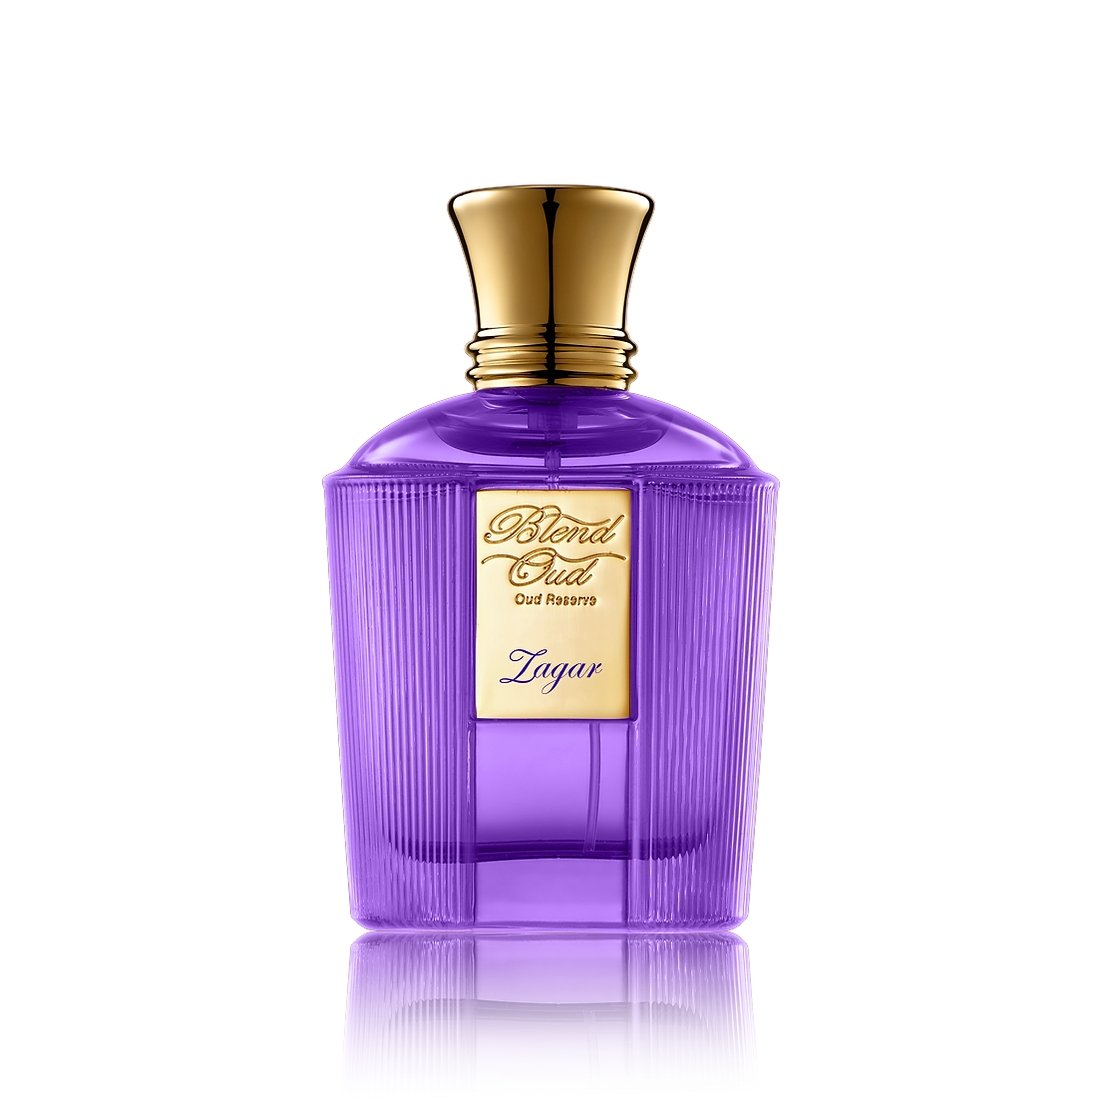 Blend Oud Zagar Perfume & Cologne 2 oz/60 ml Decants R Us